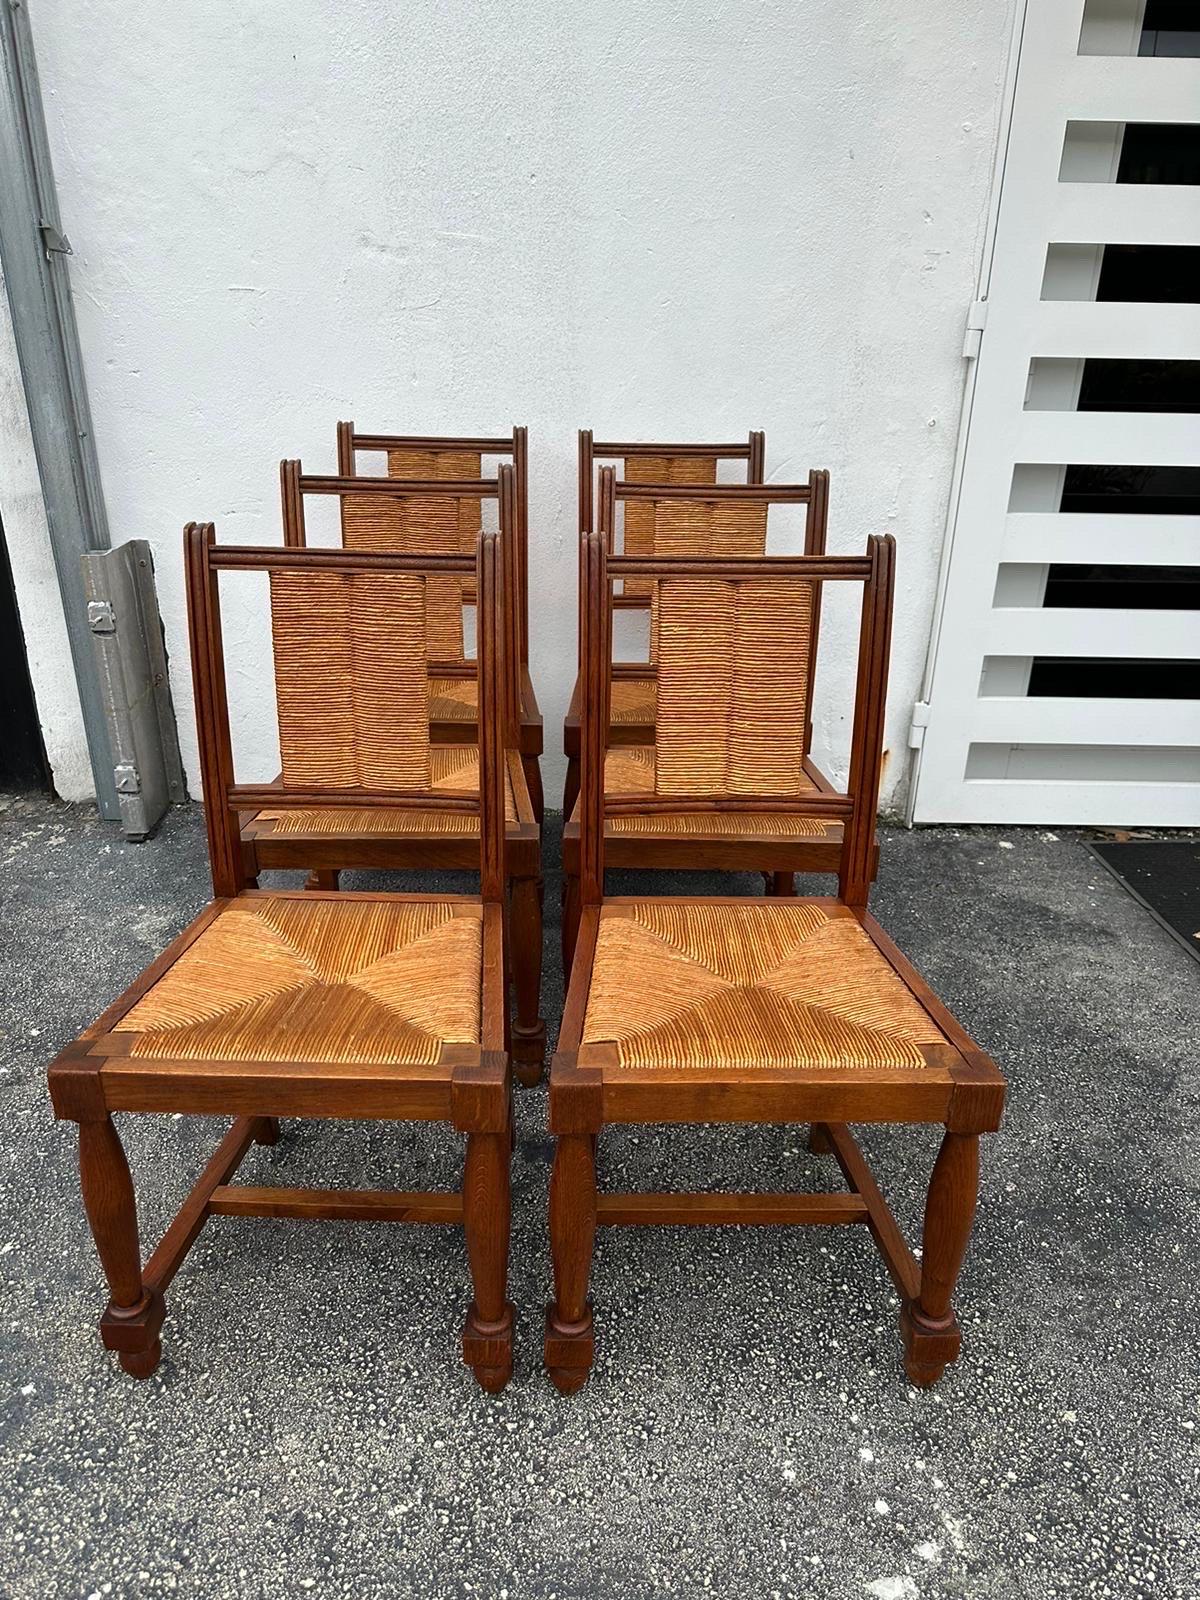 Vintage Nussbaum und Binsen Sitz Esszimmerstühle von Charles Dudouyt, Frankreich 1940er Jahre.  Dudouyt fertigte Holzmöbel in strengen Formen des Art déco/Brutalismus, wobei er verspielte Geometrien und Konstruktionsmethoden verwendete, die eher der